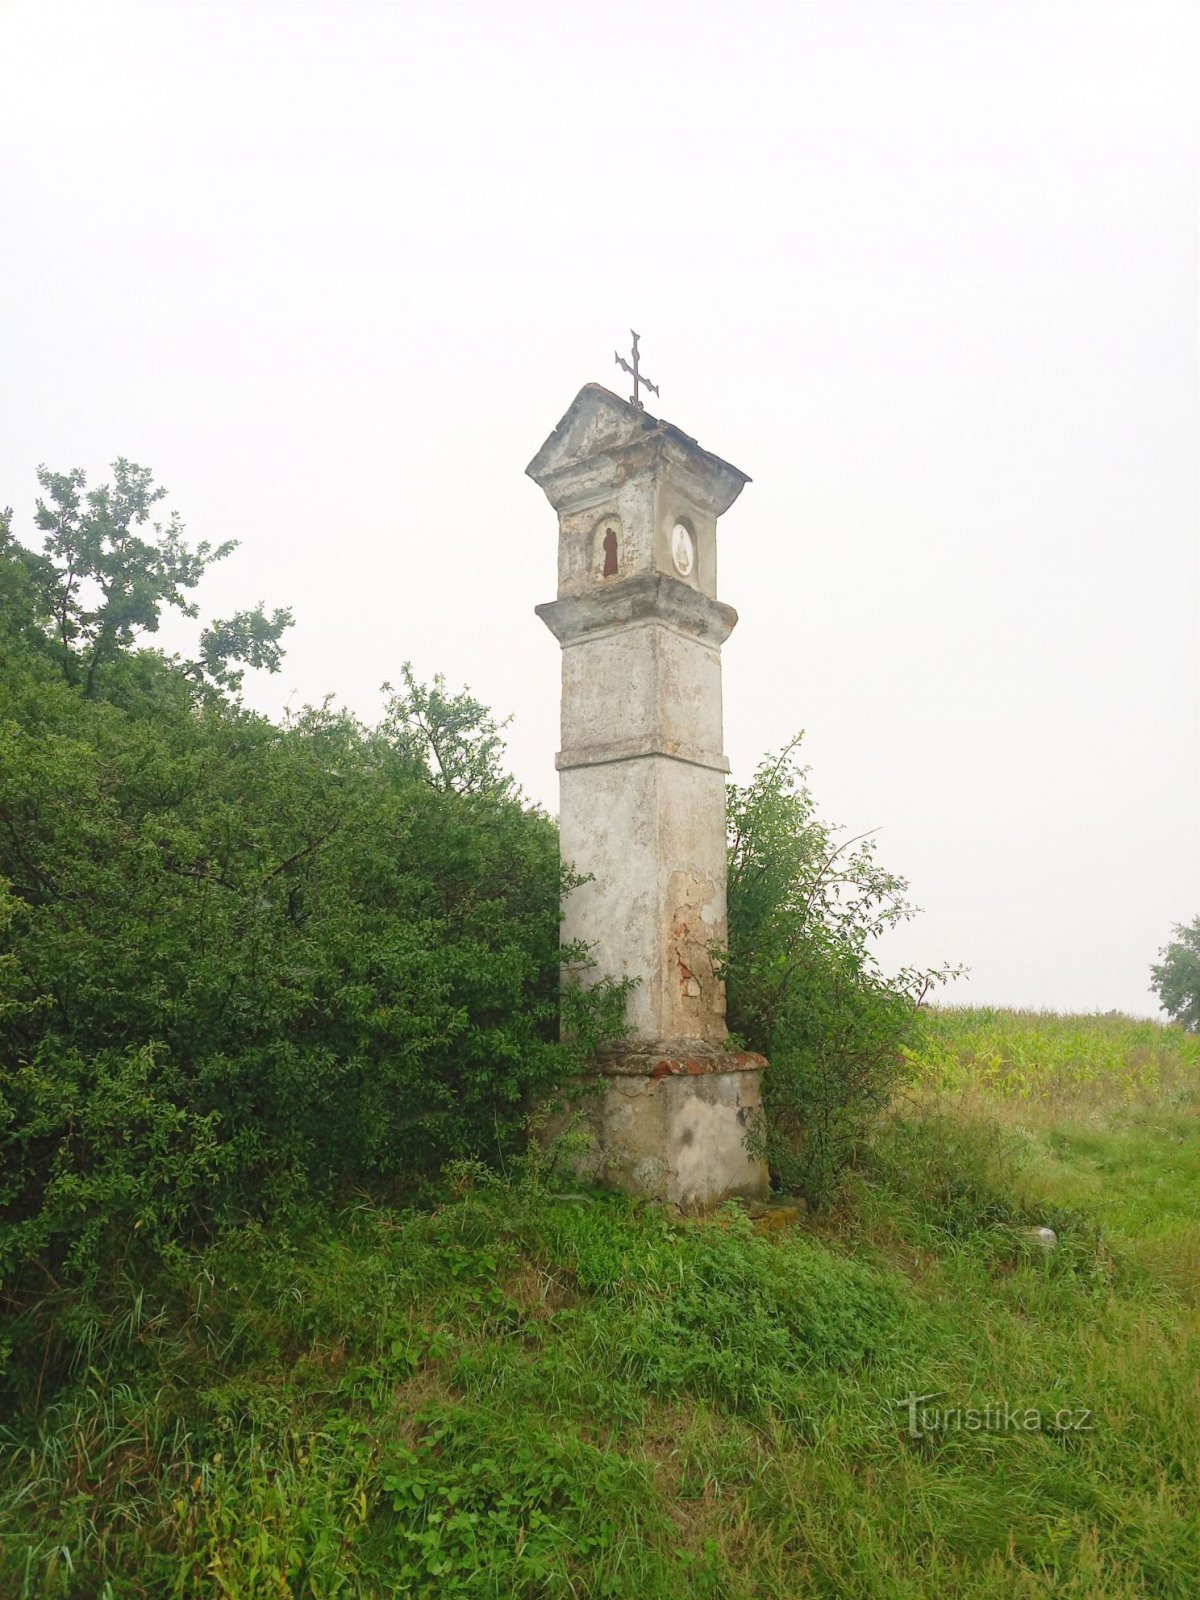 2. Zidana stebrasta agonija pri Kňovicah s preloma iz 18. v 19. stol.